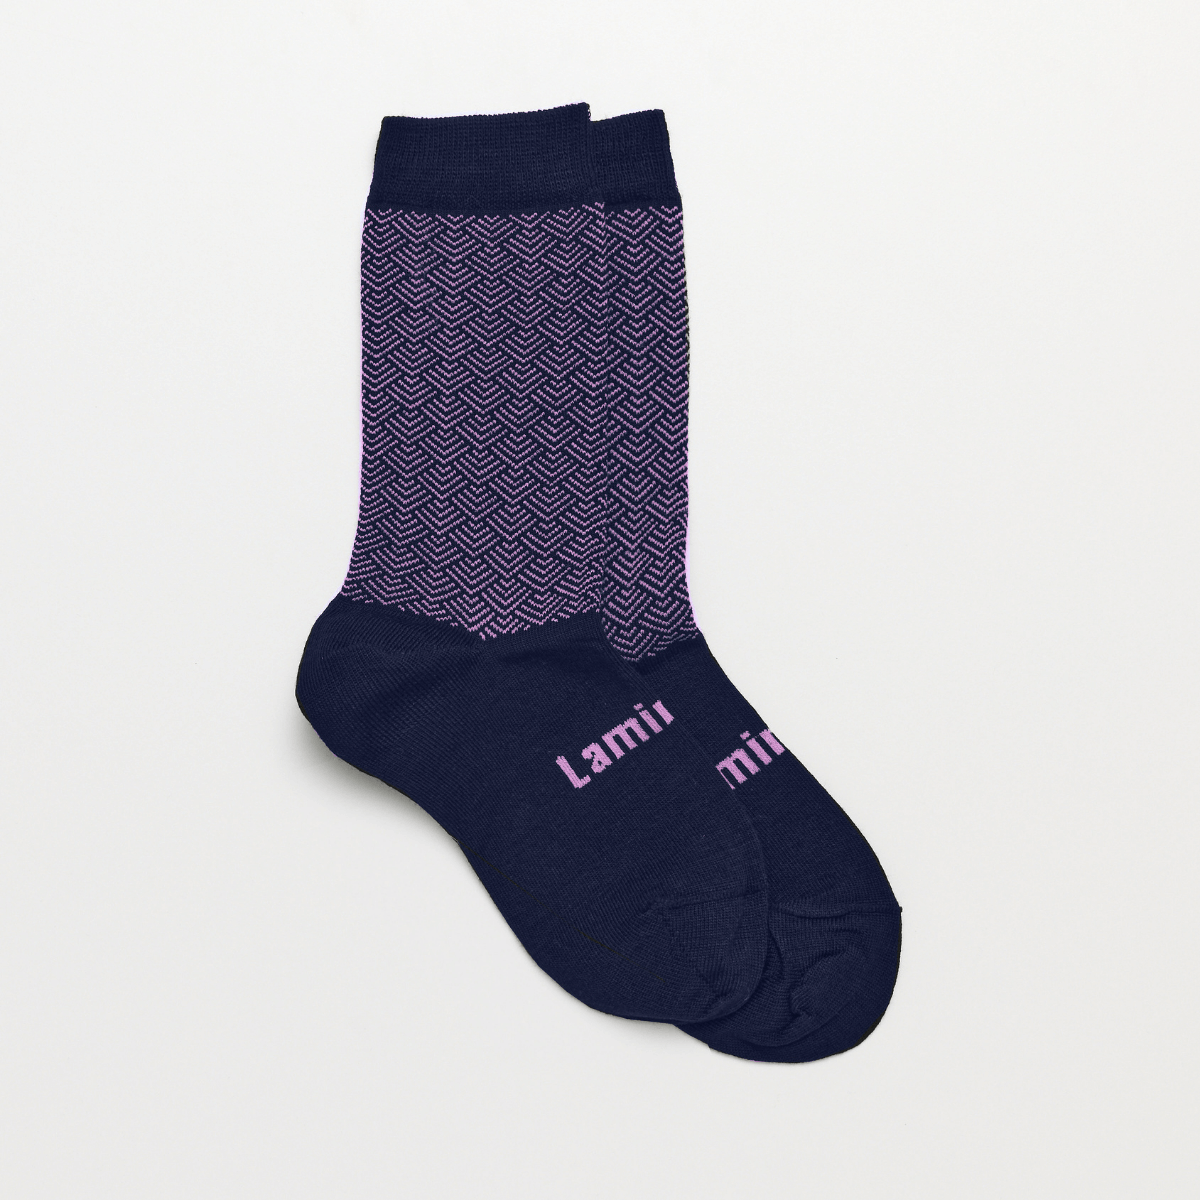 merino wool child socks navy and purple